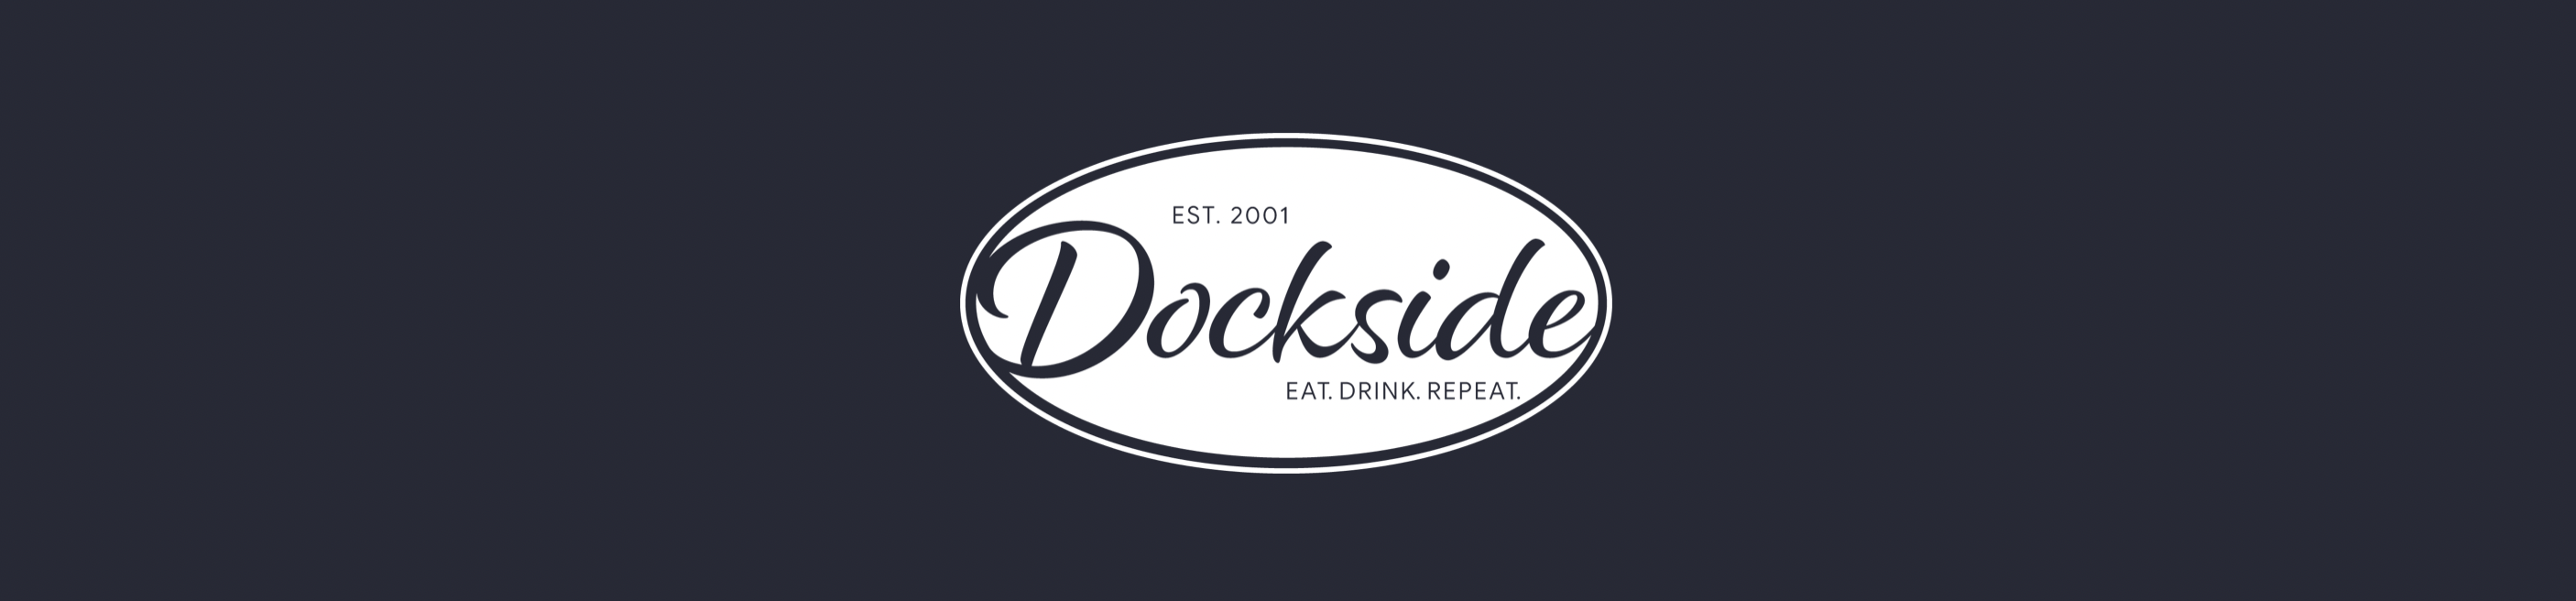 Dockside Restaurant